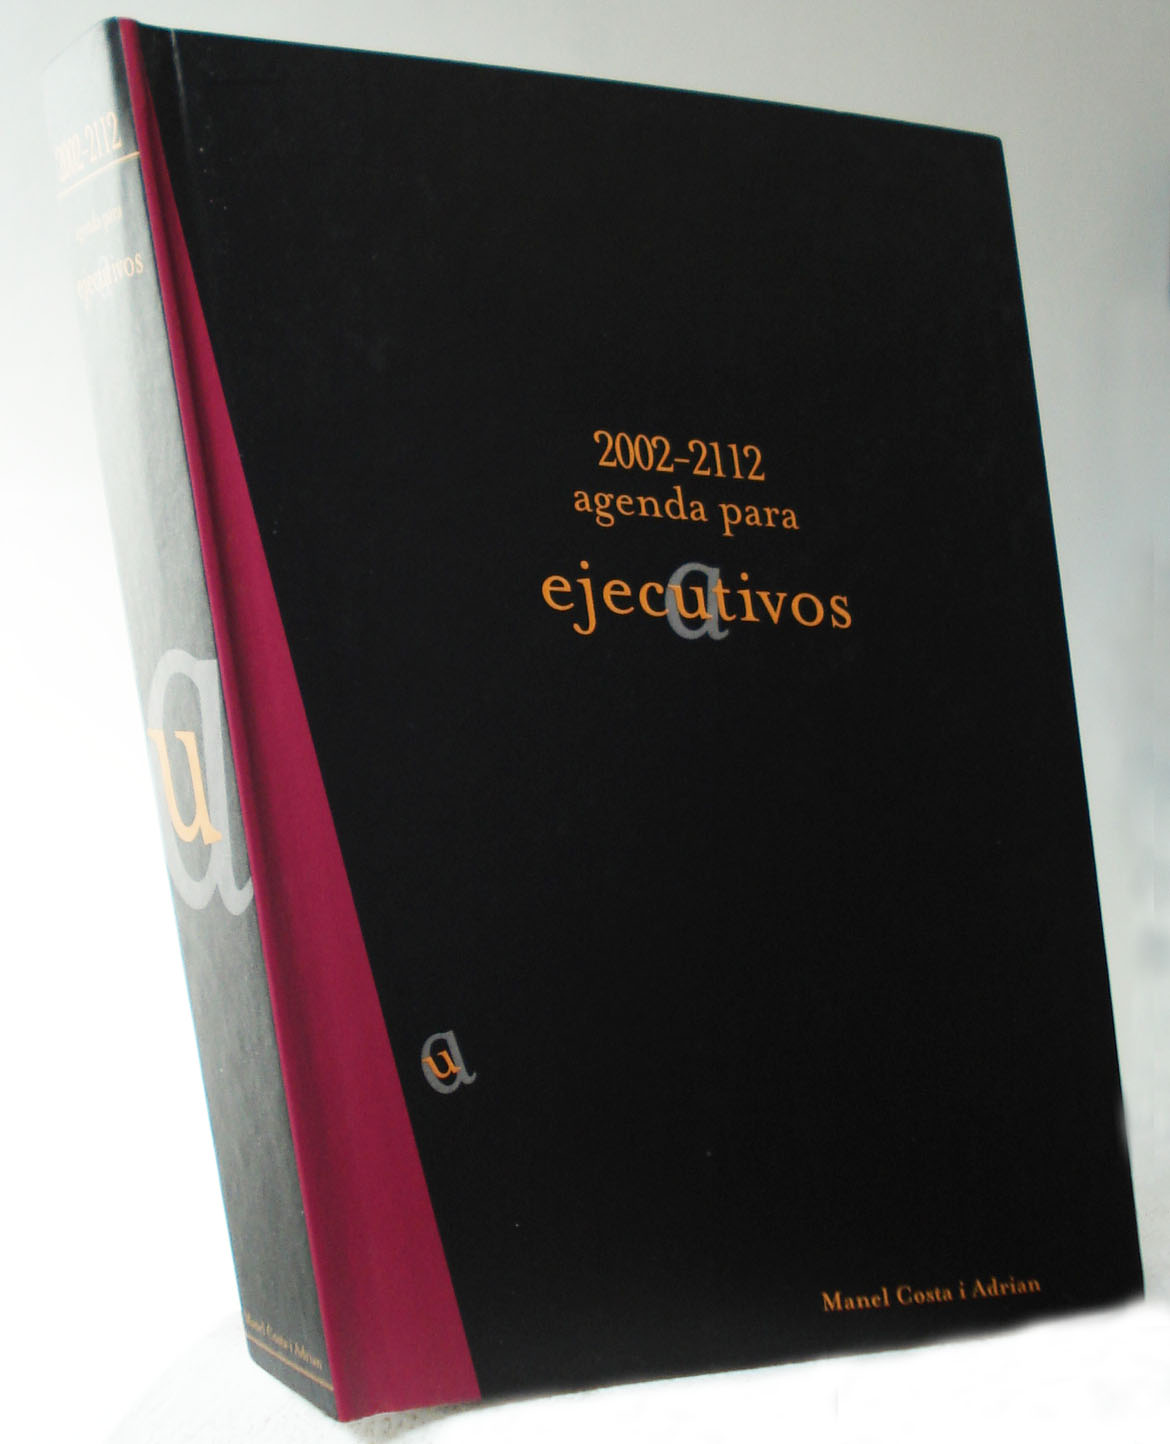 2002-2112 Agenda para ejecautivos